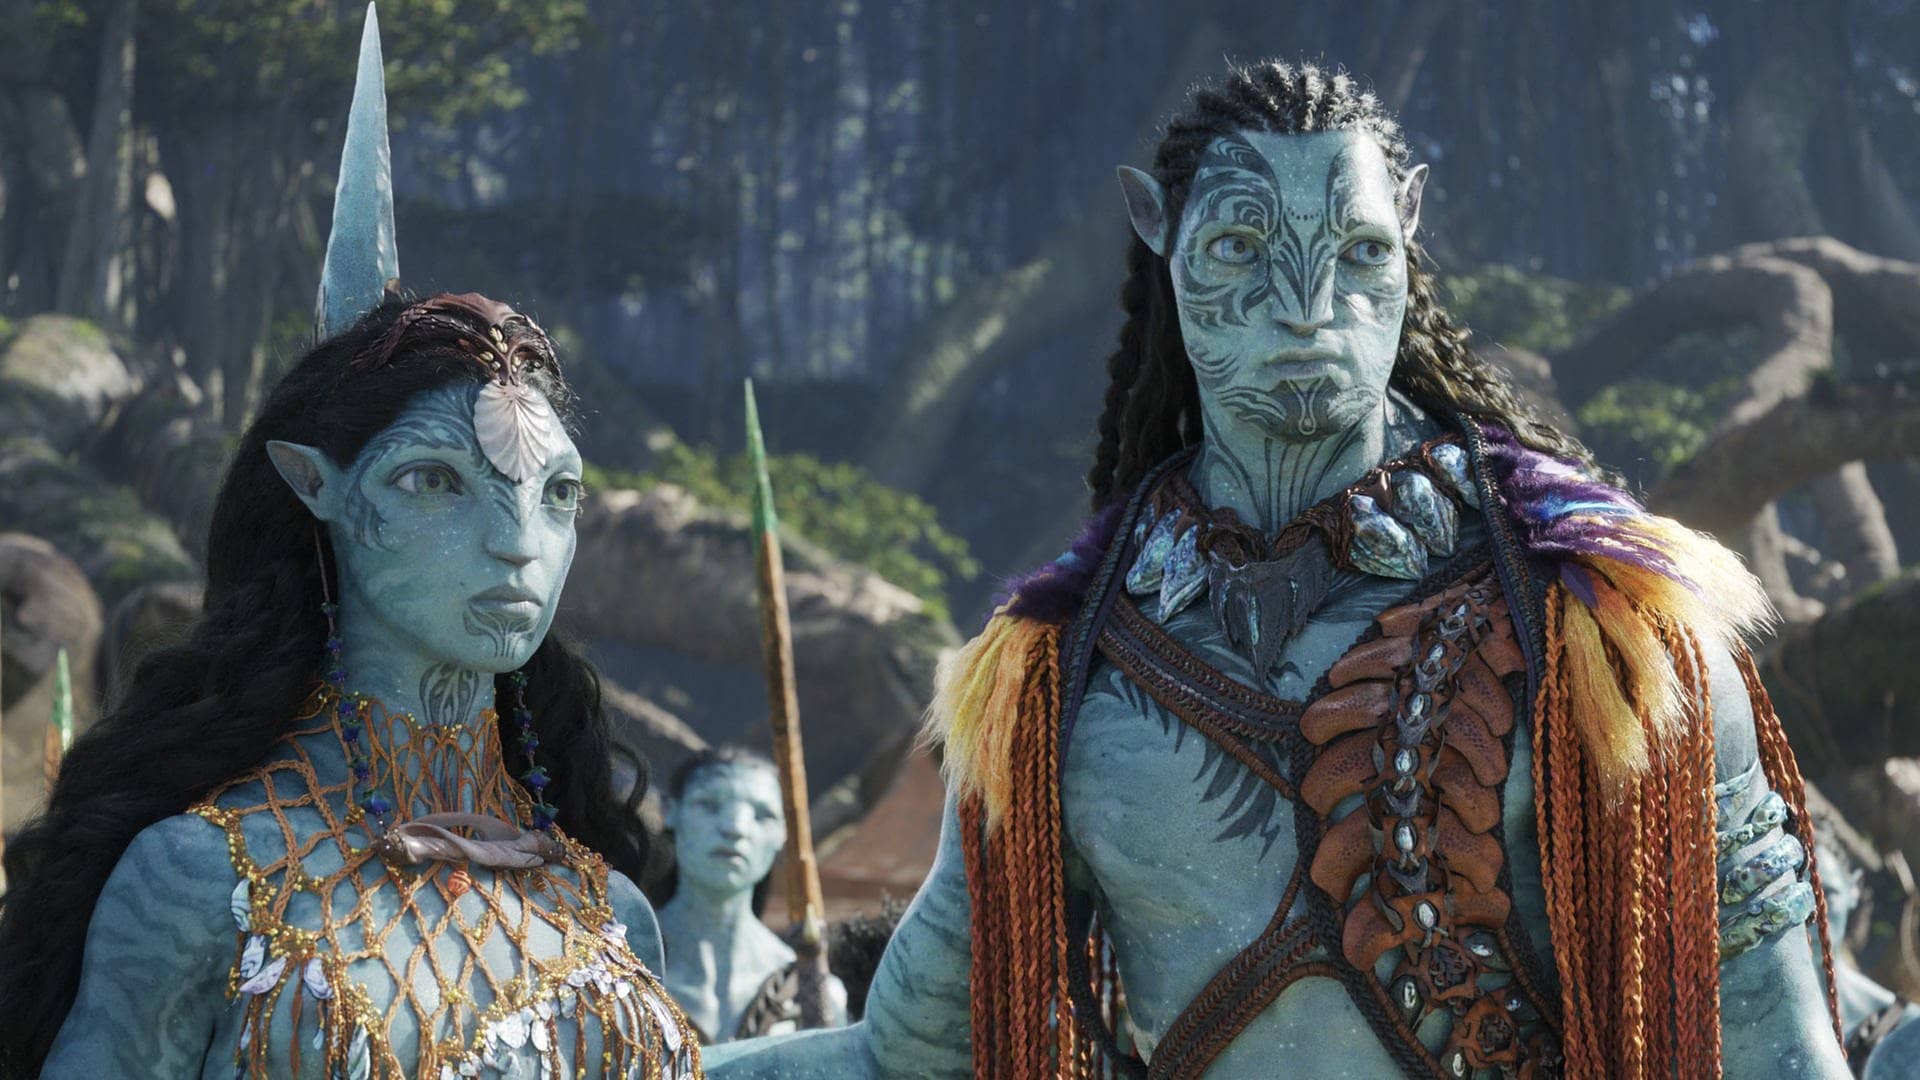 Szenenbild aus dem Film Avatar 2: Eine Frau und ein Mann schauen in die Ferne. (Foto: Disney)